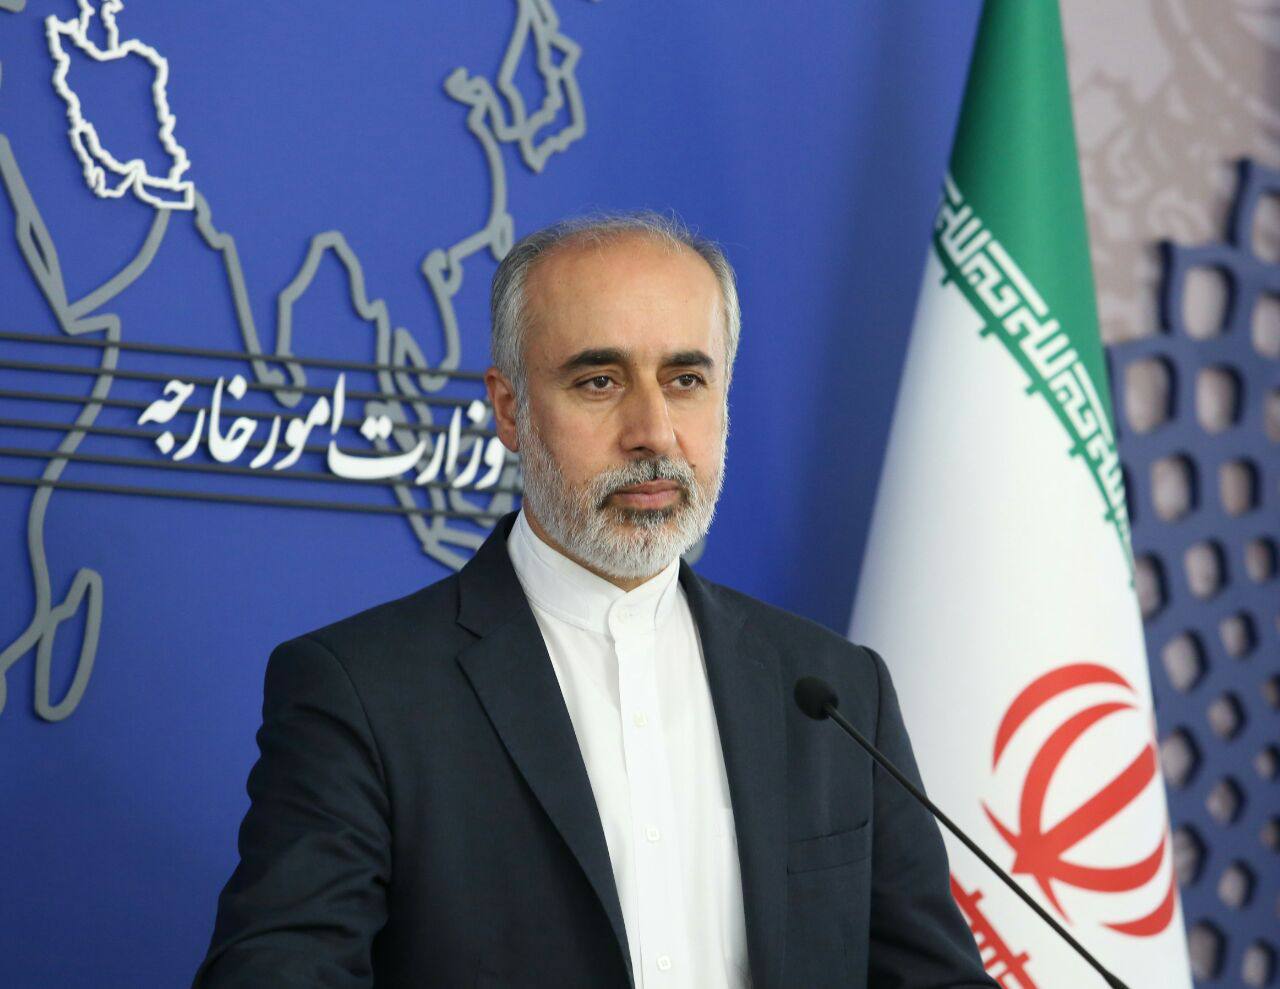 الخارجية الايرانية ستعلن عن حزمة عقوبات جديدة ضد الاتحاد الاوروبي